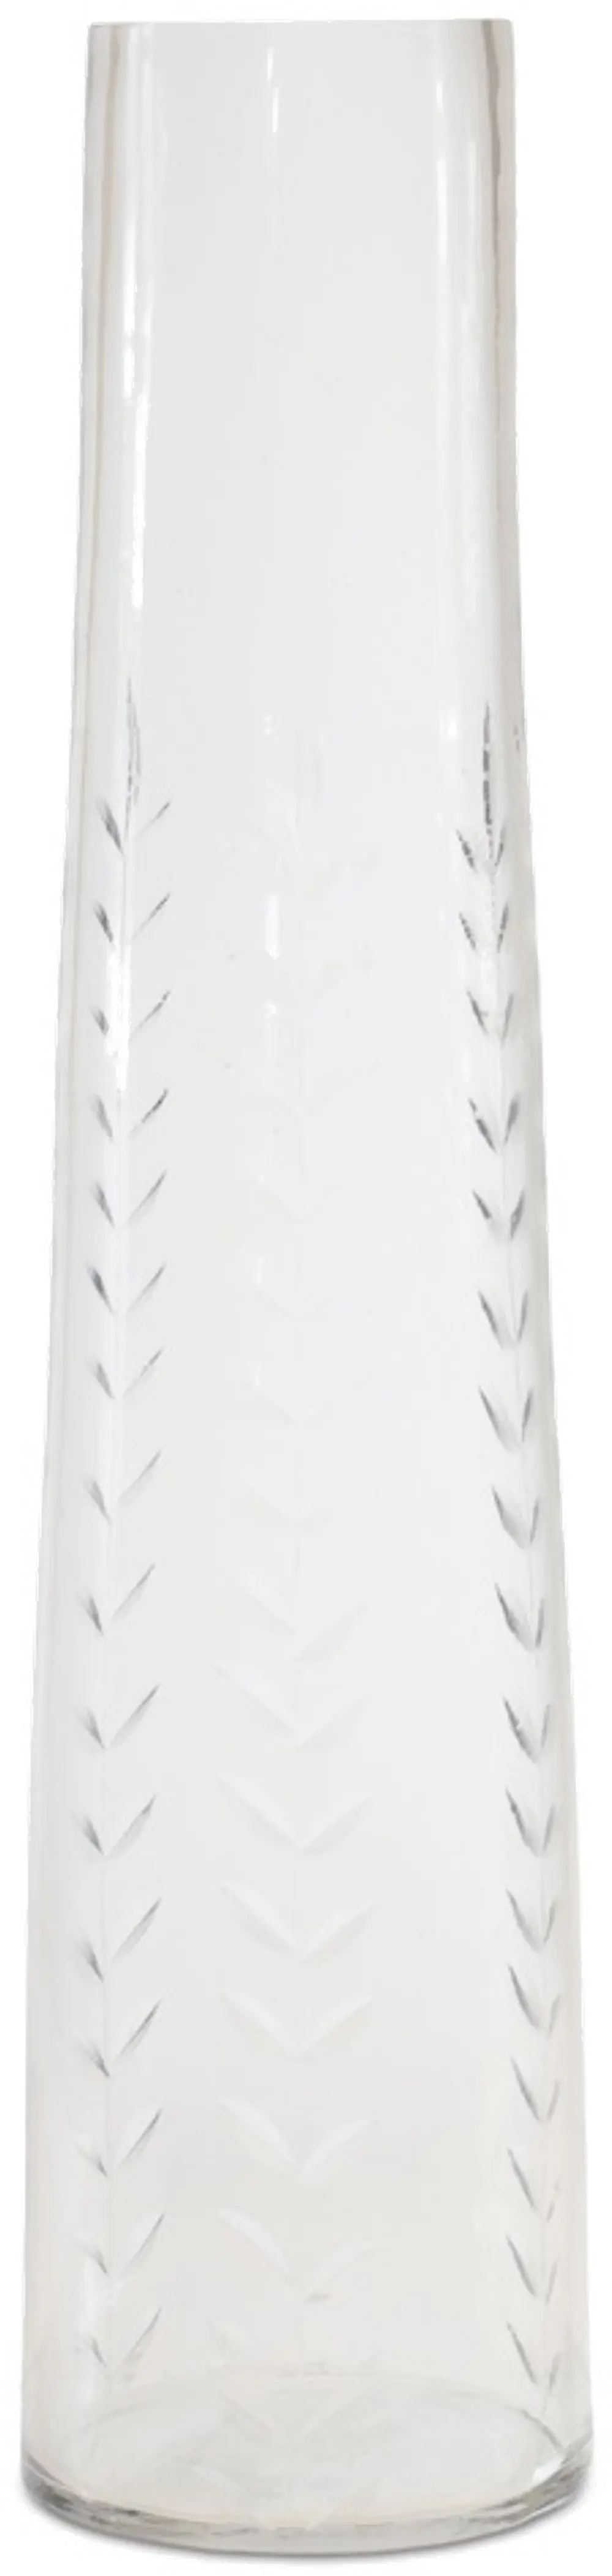 11 Inch White Glass Vase-1